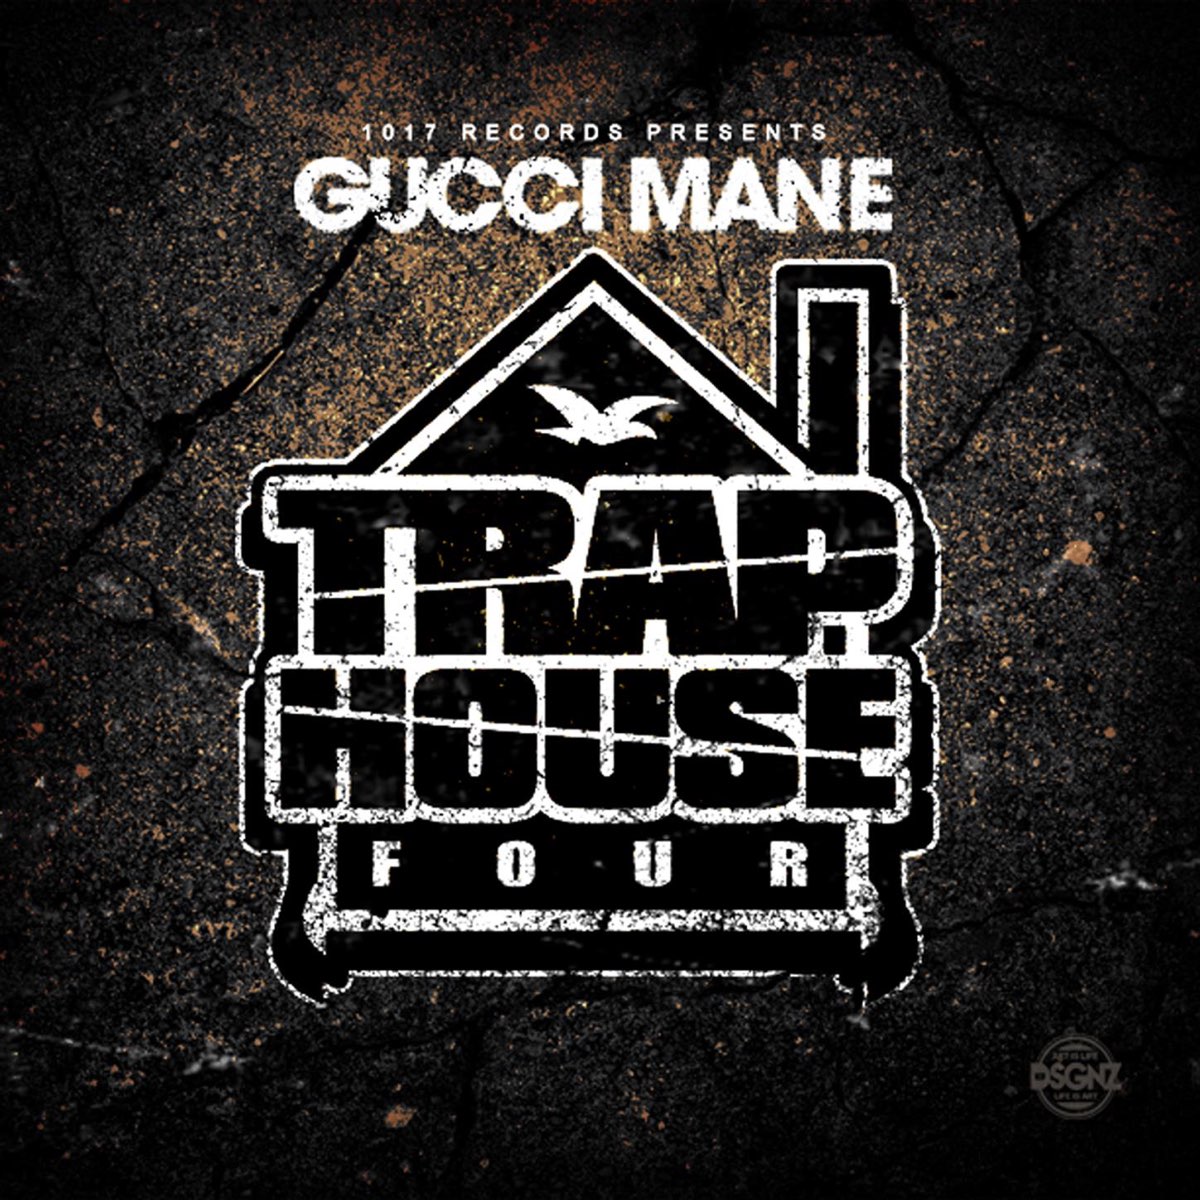 Har det dårligt kilometer hykleri Trap House 4 by Gucci Mane on Apple Music